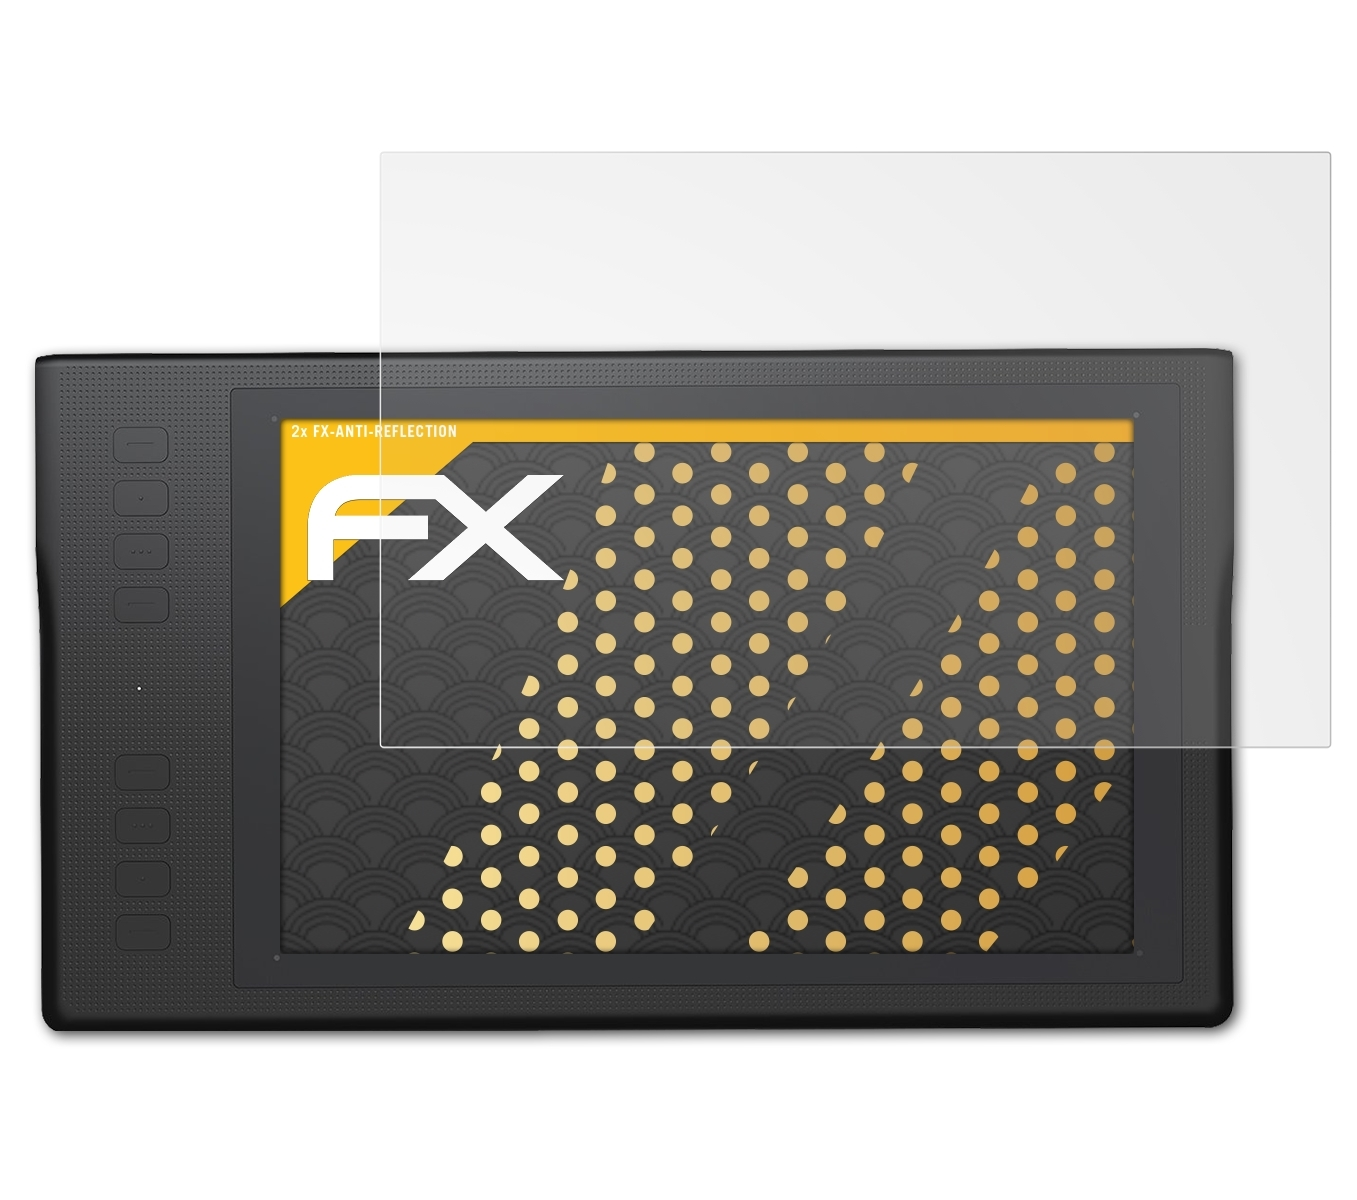 ATFOLIX 2x FX-Antireflex Displayschutz(für Huion Q11K)